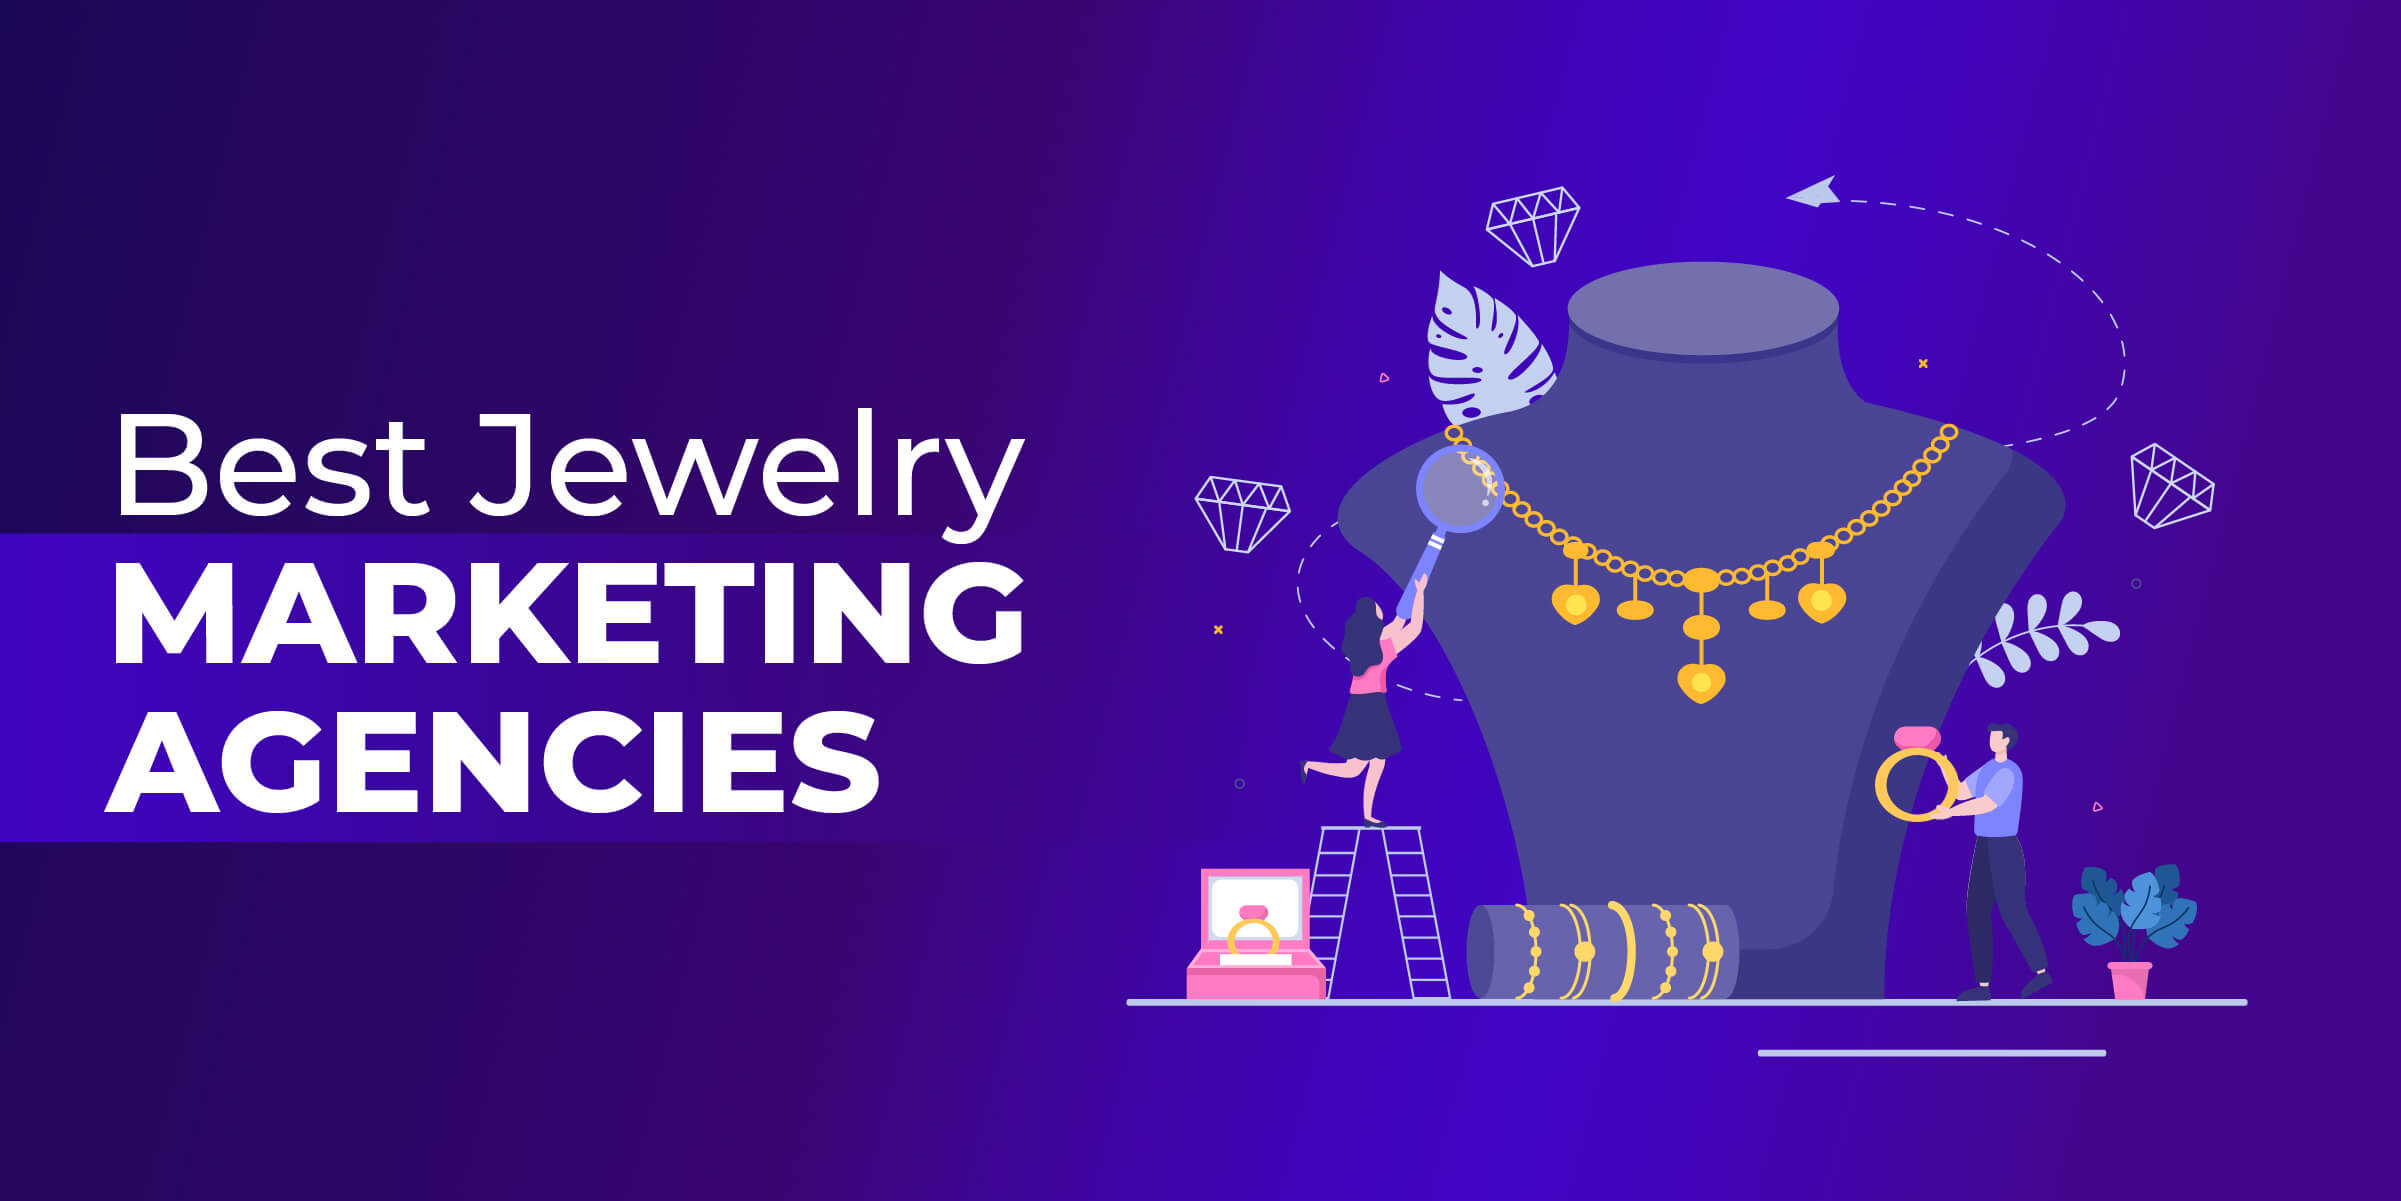 Best Jewelry Marketing Agencies